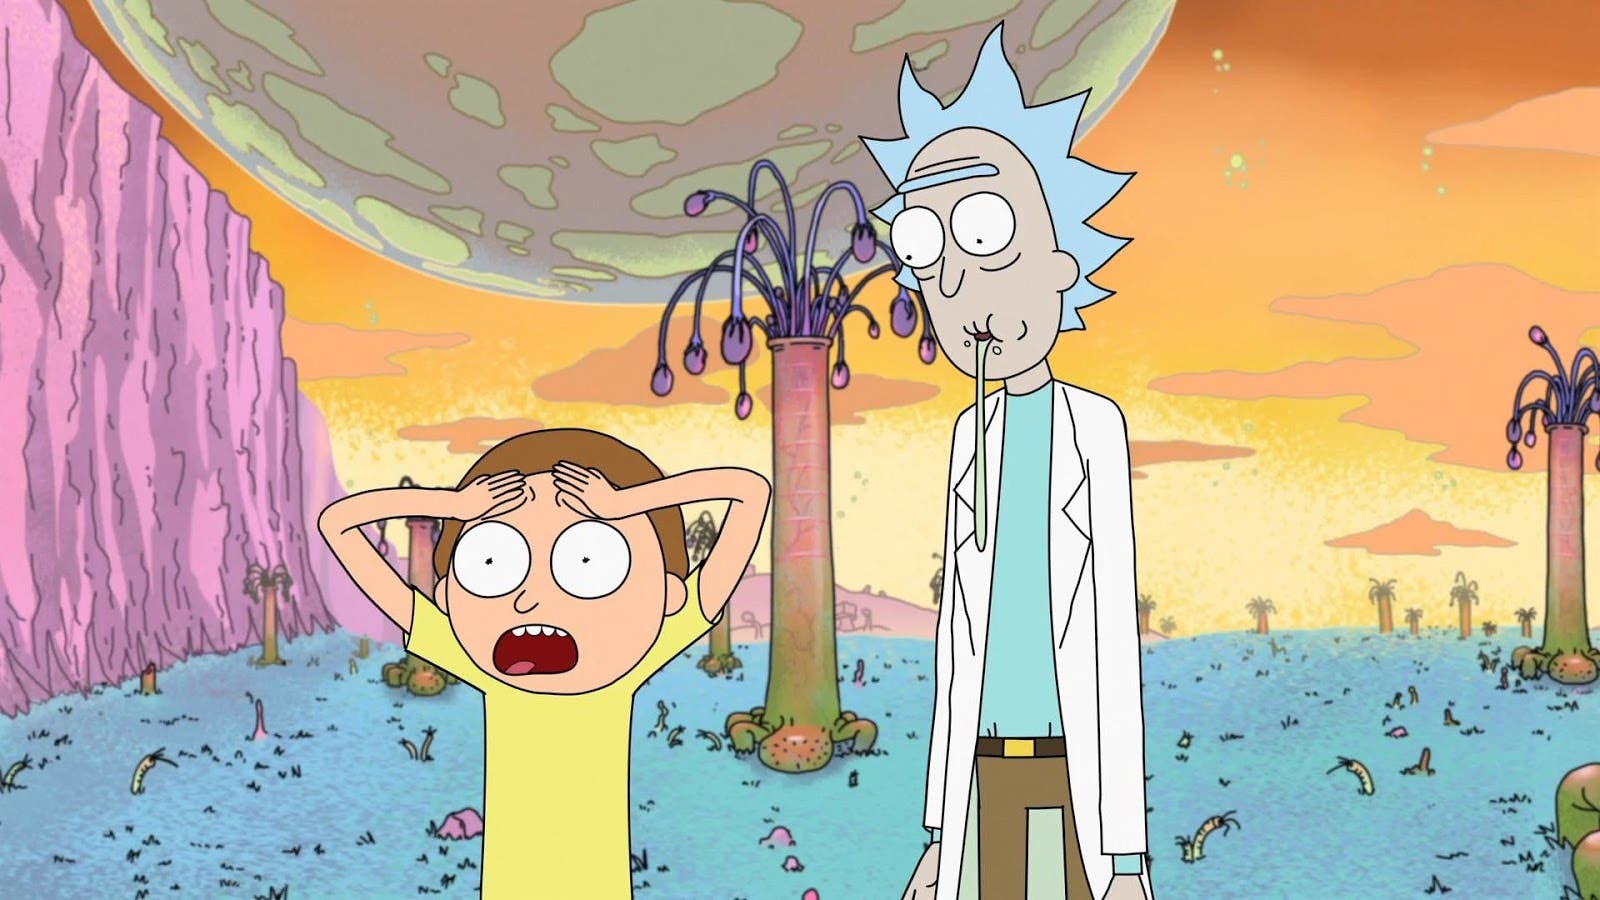 Escena de Rick y Morty, con ambos personajes en una situación característica de la serie.